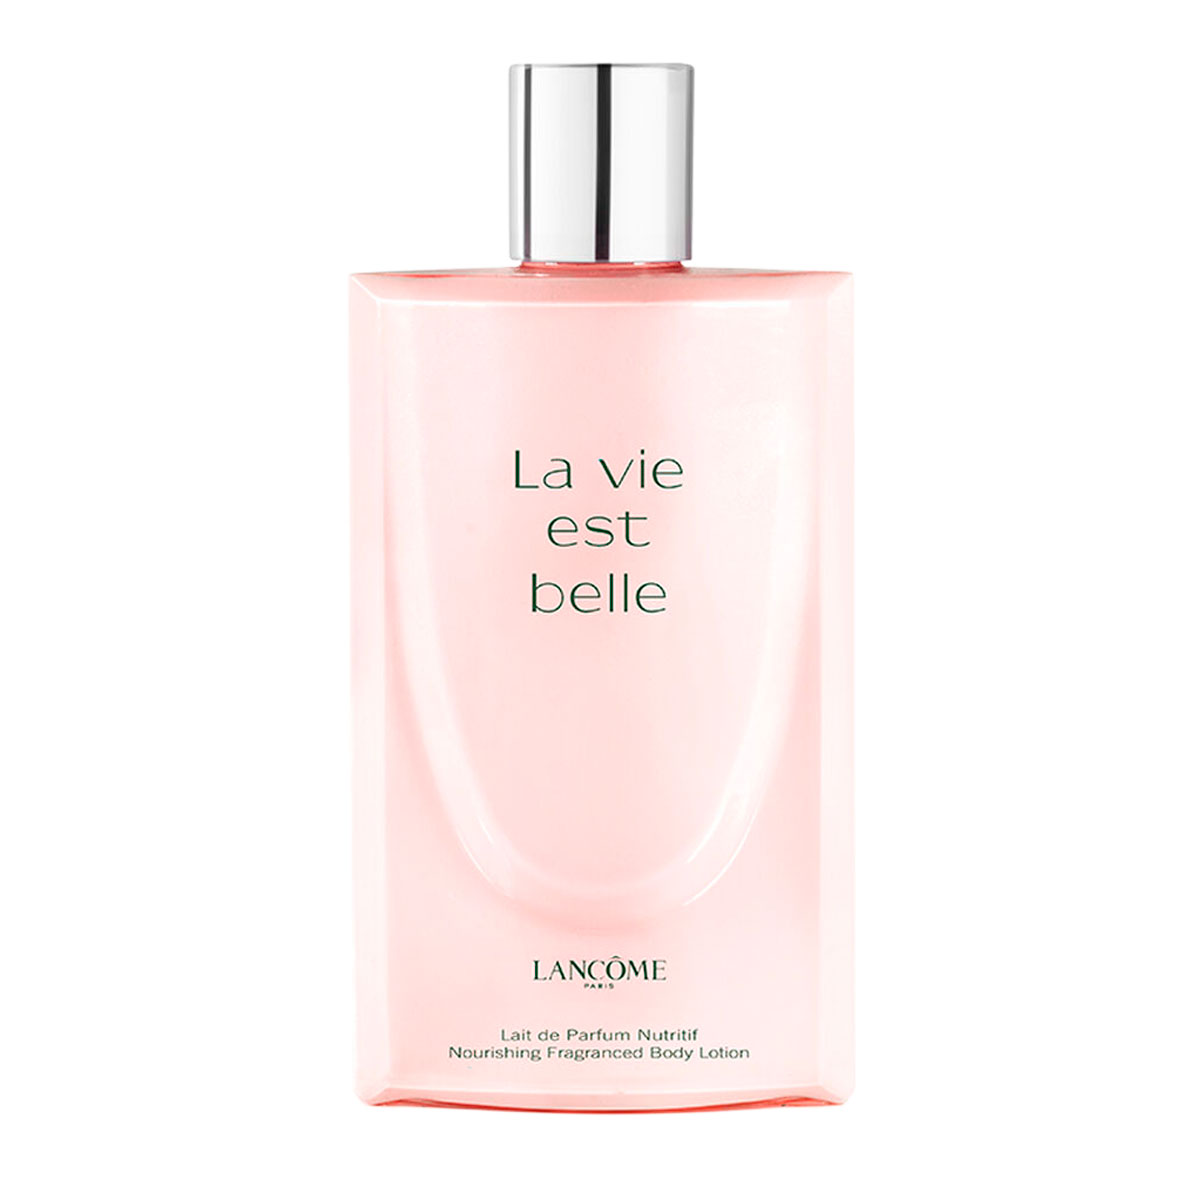 La-vie-est-belle-body-lotion-6.7-oz_-200ml-